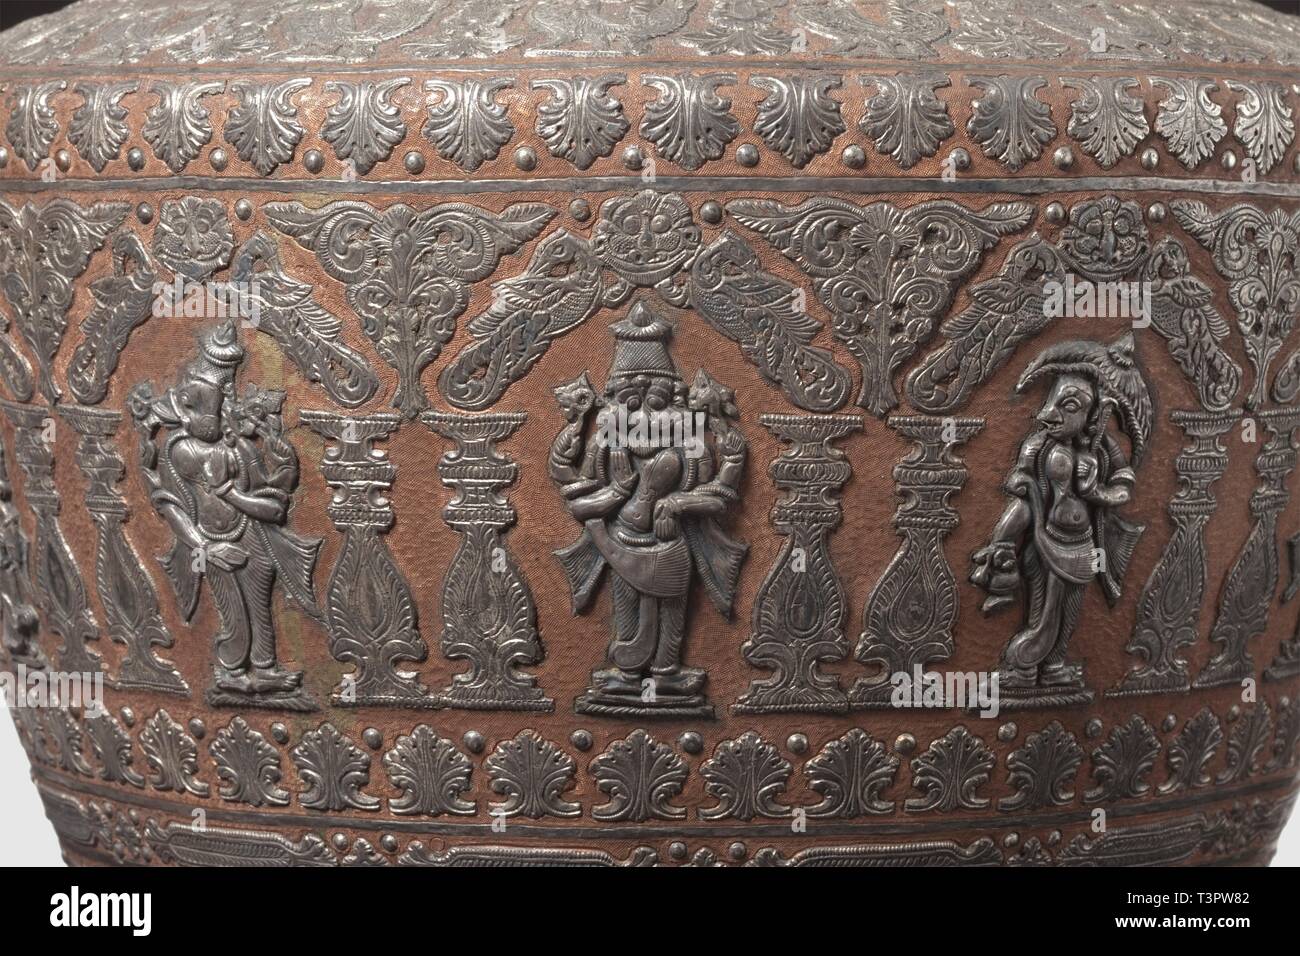 Un indio meridional magnífico jarrón con incrustaciones de plata, del siglo  xix y persiguieron cónico cuerpo fabricado de cobre con cuello corto,  quemado. El exterior está totalmente bordada con incrustaciones de bandas,